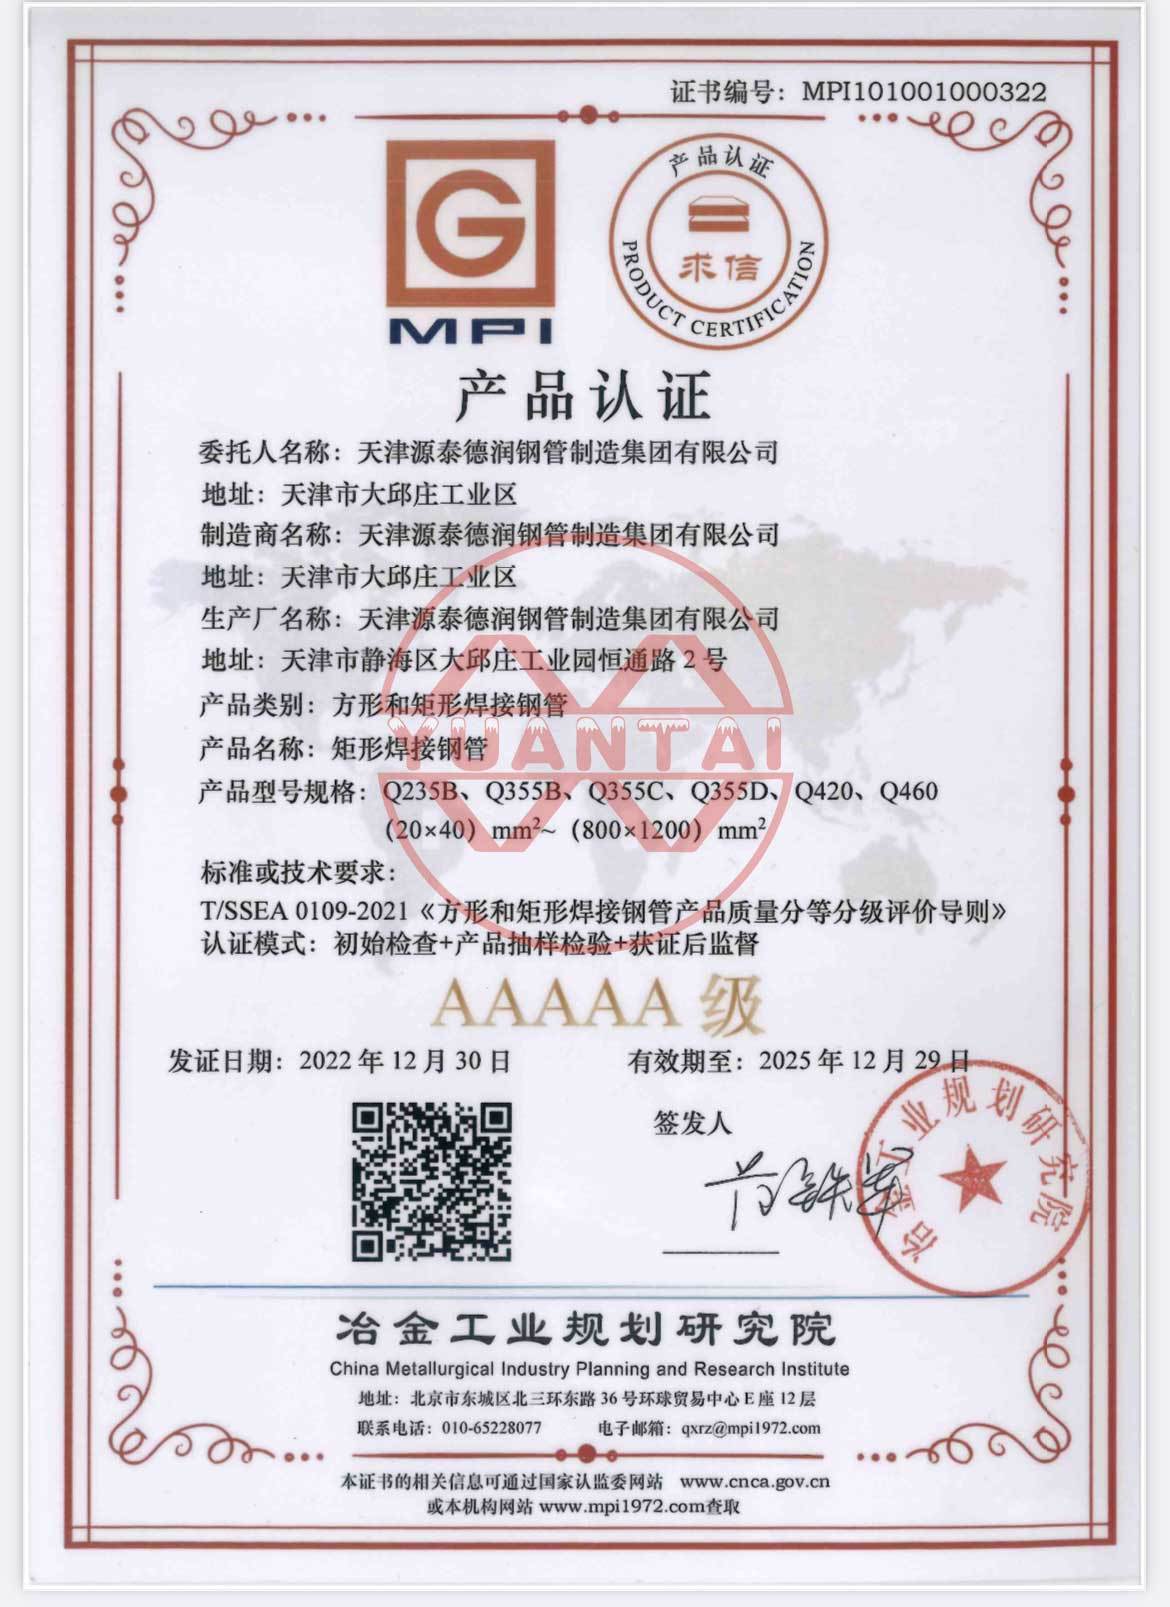 los tubos de acero soldados cuadrados y rectangulares del Grupo tianjin yuantai derun recibieron la certificación de producto aaaaa del Instituto de planificación de la industria metalúrgica